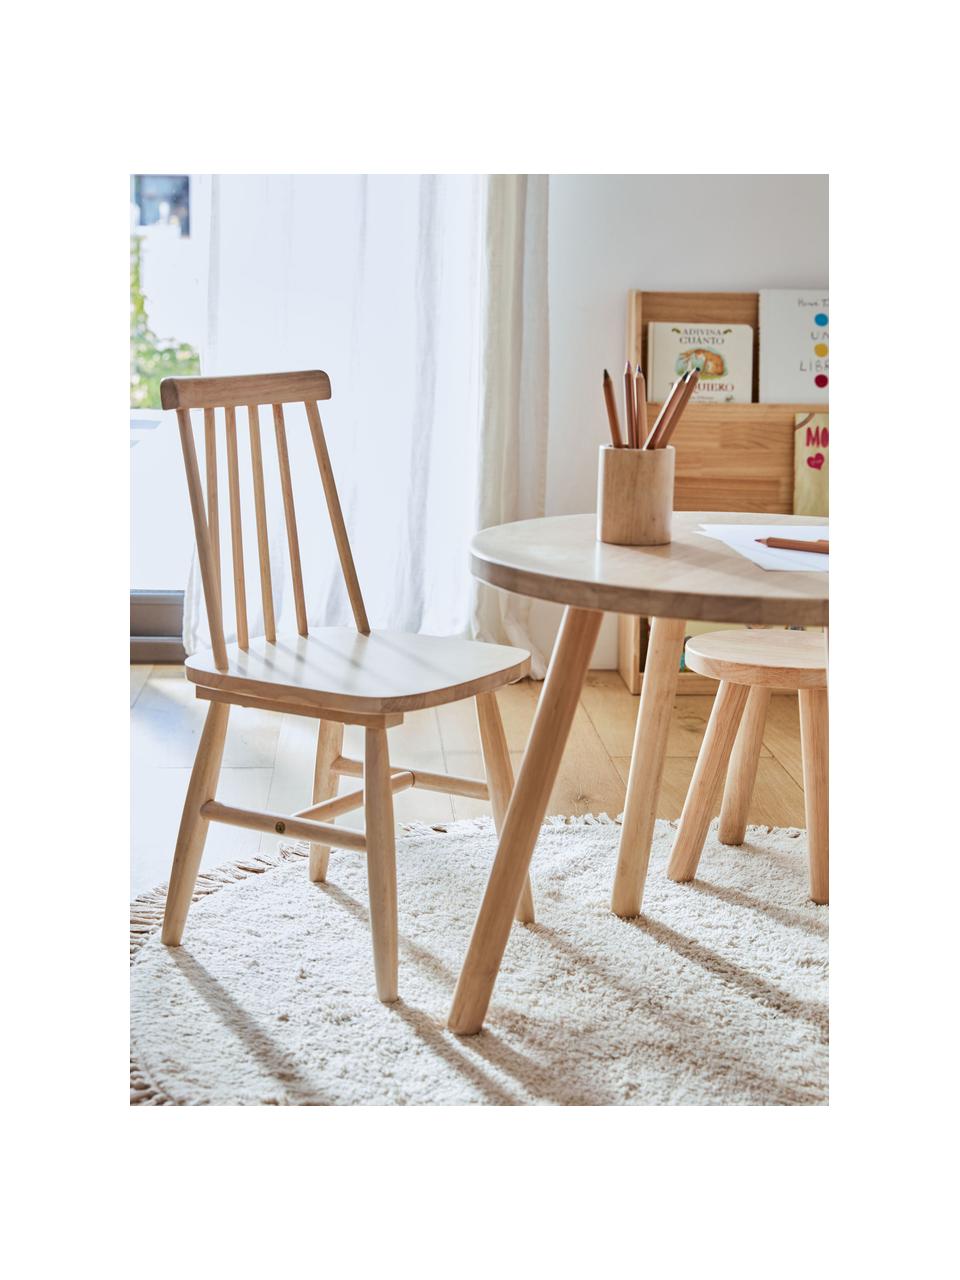 Krzesło z drewna kauczukowego dla dzieci Tressia, Drewno kauczukowe, Drewno kauczukowe, S 30 x G 30 cm